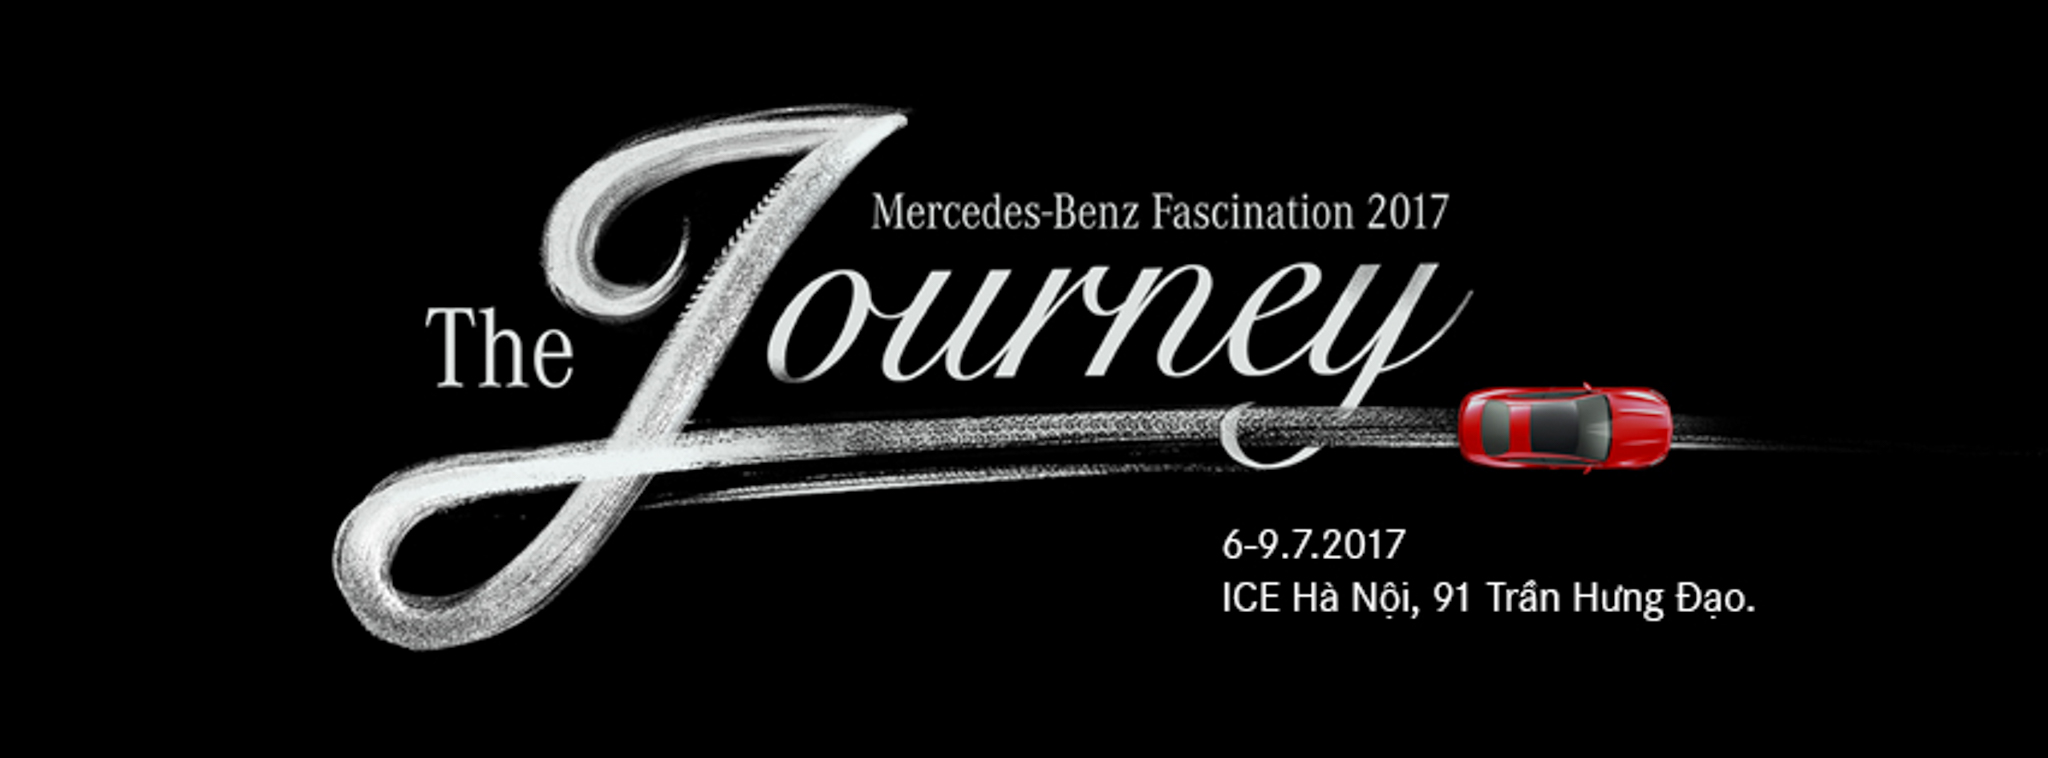 Mercedes-Benz Fascination 2017 diễn ra tại Hà Nội, từ 05-09/07; chủ đề "The Journey"